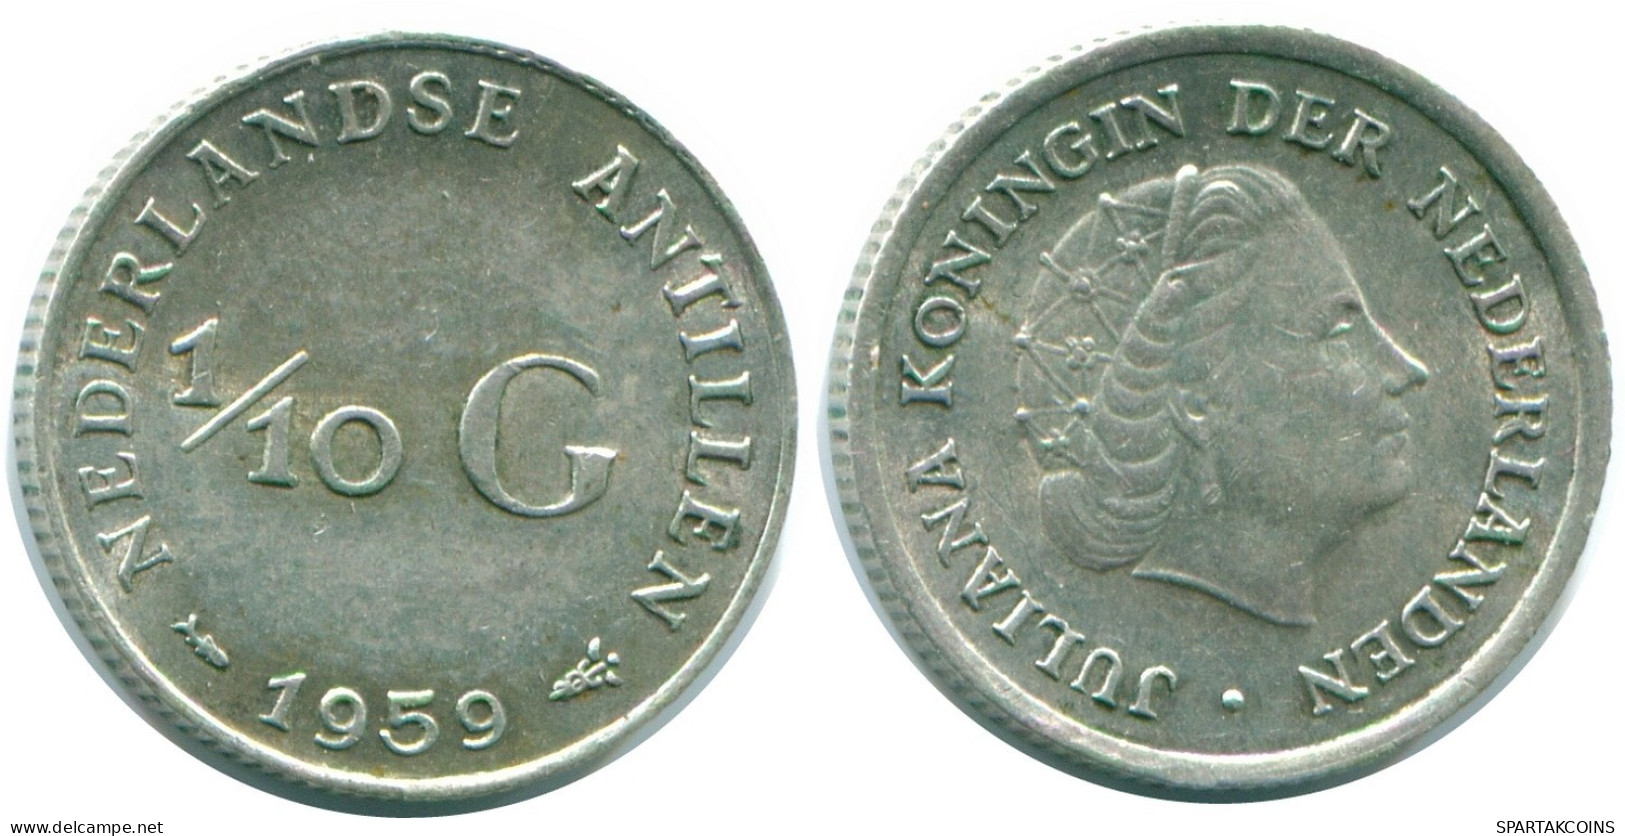 1/10 GULDEN 1959 NIEDERLÄNDISCHE ANTILLEN SILBER Koloniale Münze #NL12198.3.D.A - Nederlandse Antillen